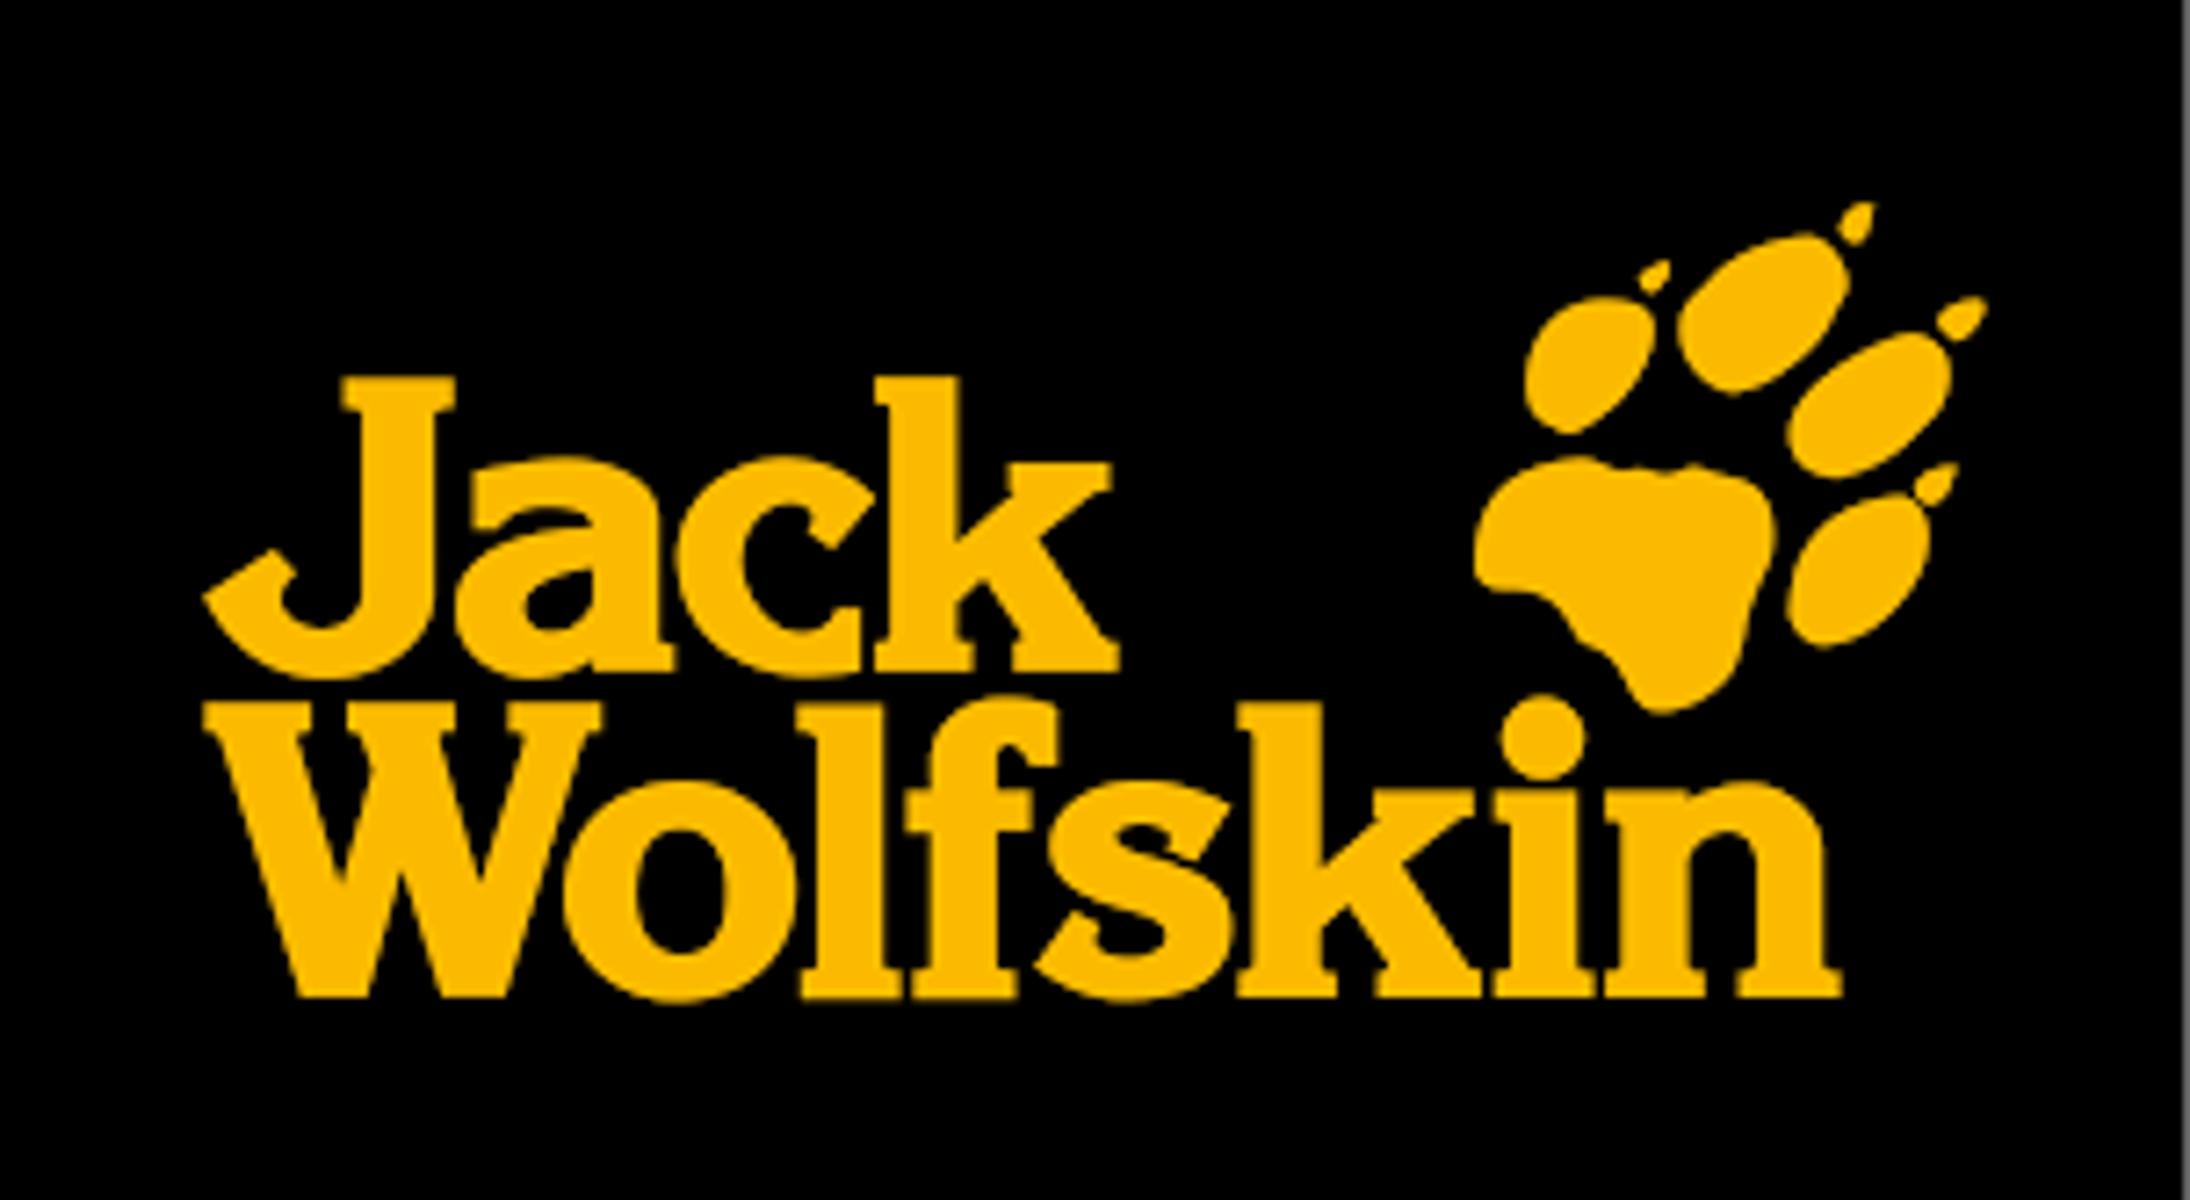 Die bekannte Outdoor-Marke Jack Wolfskin bietet in der Ludwigsstraße alles was der Outdoor-Fan für Wandern, Camping und Freitzeit in der Natur benötigt.